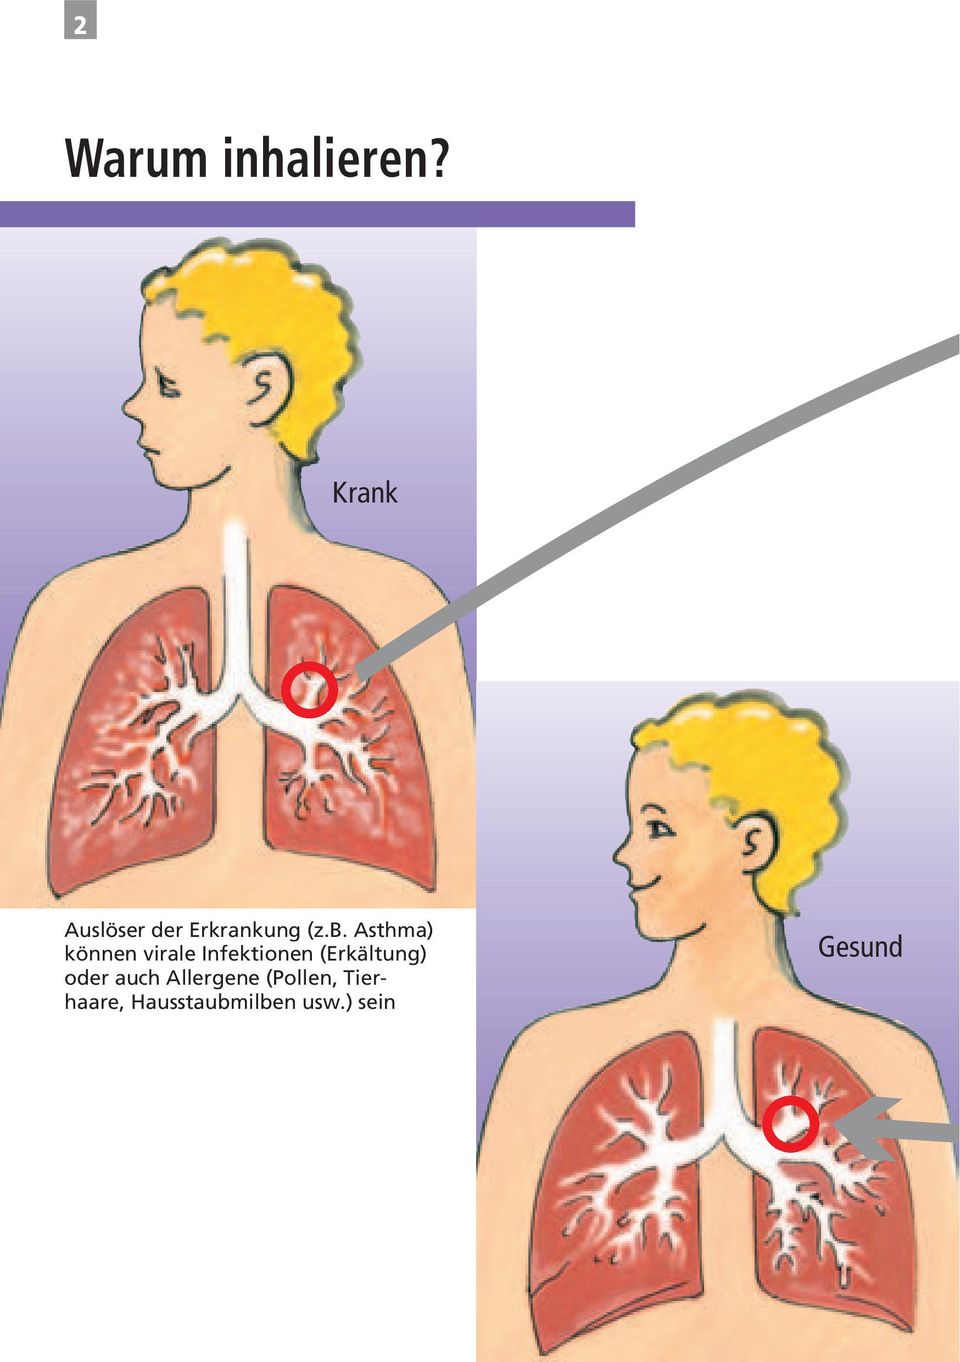 Asthma) können virale Infektionen